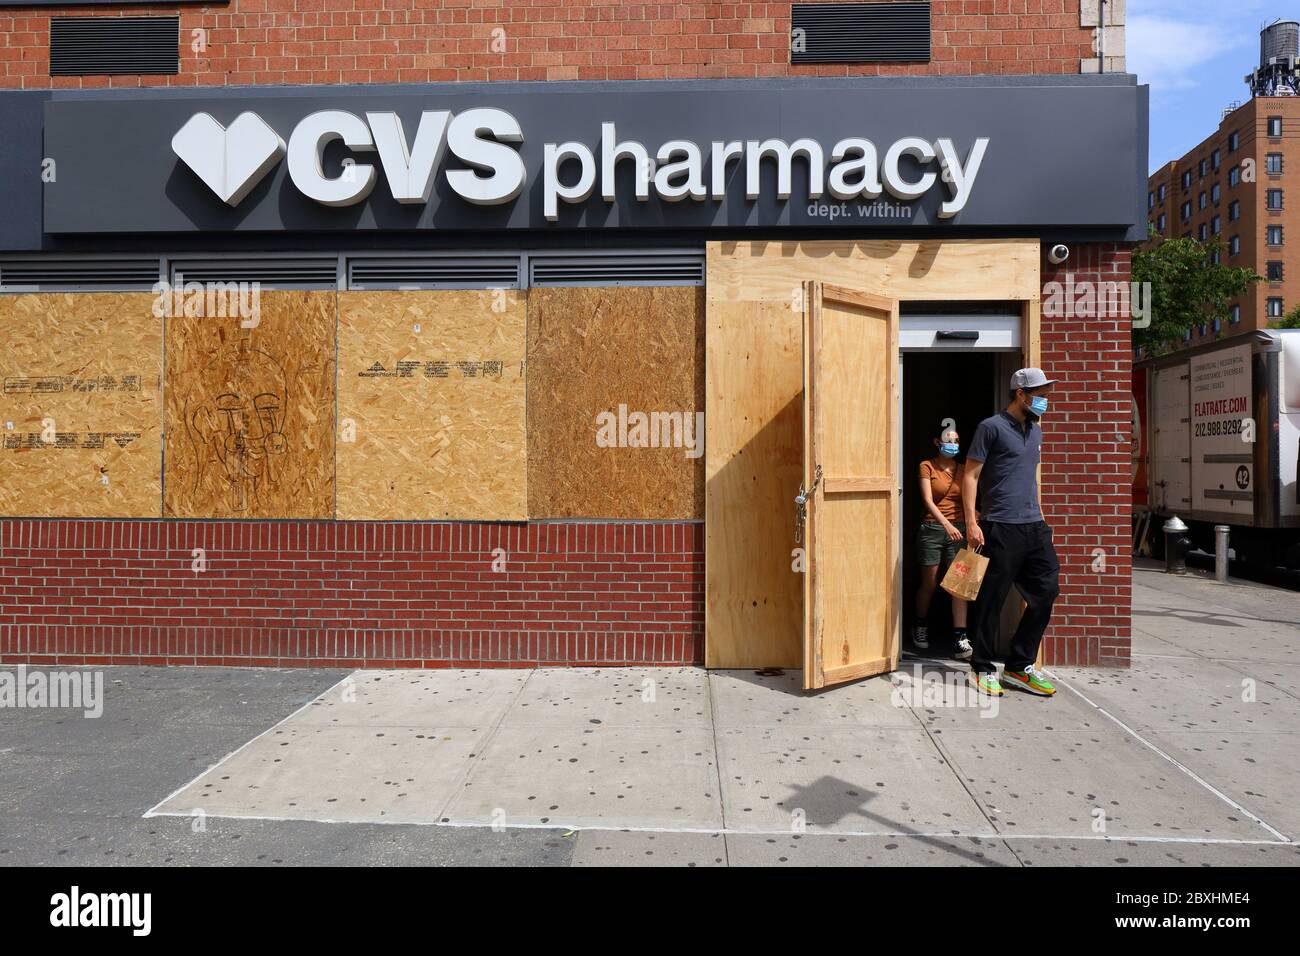 New York, New York, 4. Juni 2020. Käufer, die eine CVS-Apotheke verlassen, mit verschlossenen Fenstern, nachdem kürzlich eine große Anzahl von organisierten Einbrüchen/Plünderungen in anderen Teilen der Stadt stattgefunden hat. Das Geschäft schließt sich anderen Unternehmen in der Stadt an, die Angst vor Vandalismus haben, indem es als Vorsichtsmaßnahme ihre Fenster und Türen aufhebt und während der covid-19-Pandemie für Geschäfte geöffnet bleibt. Die vielen verschlossenen Ladenfronten in der Stadt senden eine Botschaft der Hoffnungslosigkeit und Verzweiflung an viele, die es nicht gewohnt sind, so viele verschlossene Ladenfronten in einer normalerweise lebhaften und geschäftigen Stadt zu sehen. Juni 2020 Stockfoto